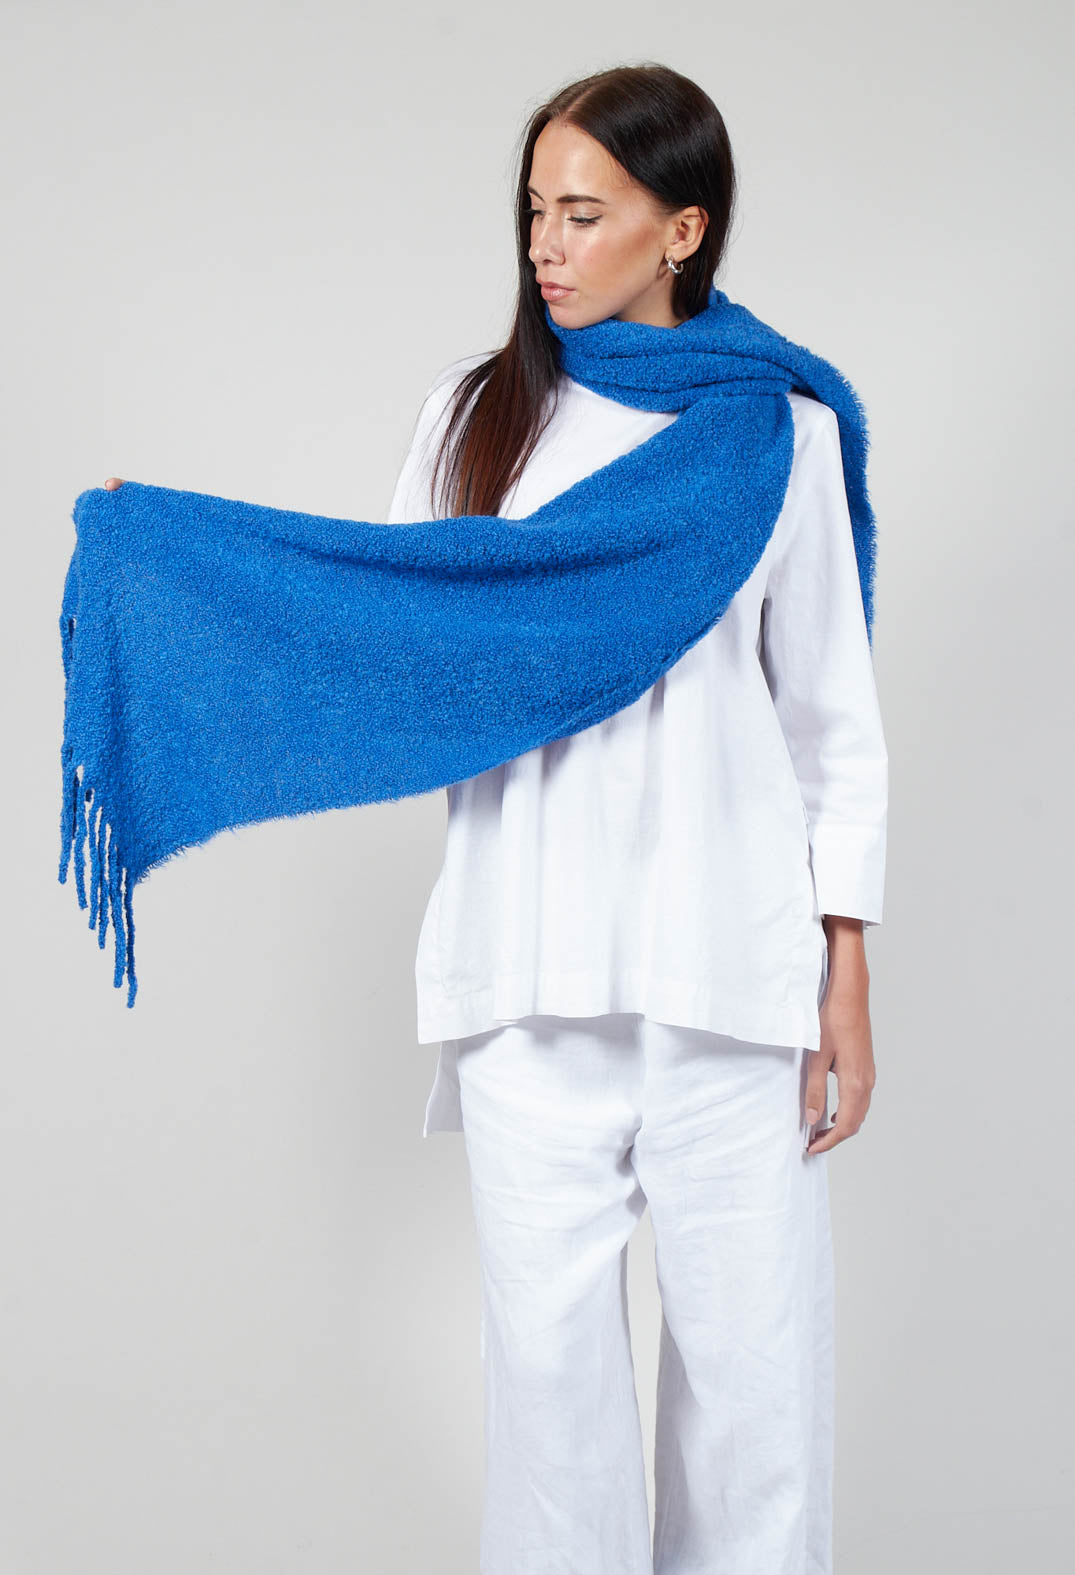 lady holding a runa scarf in deep sky blue